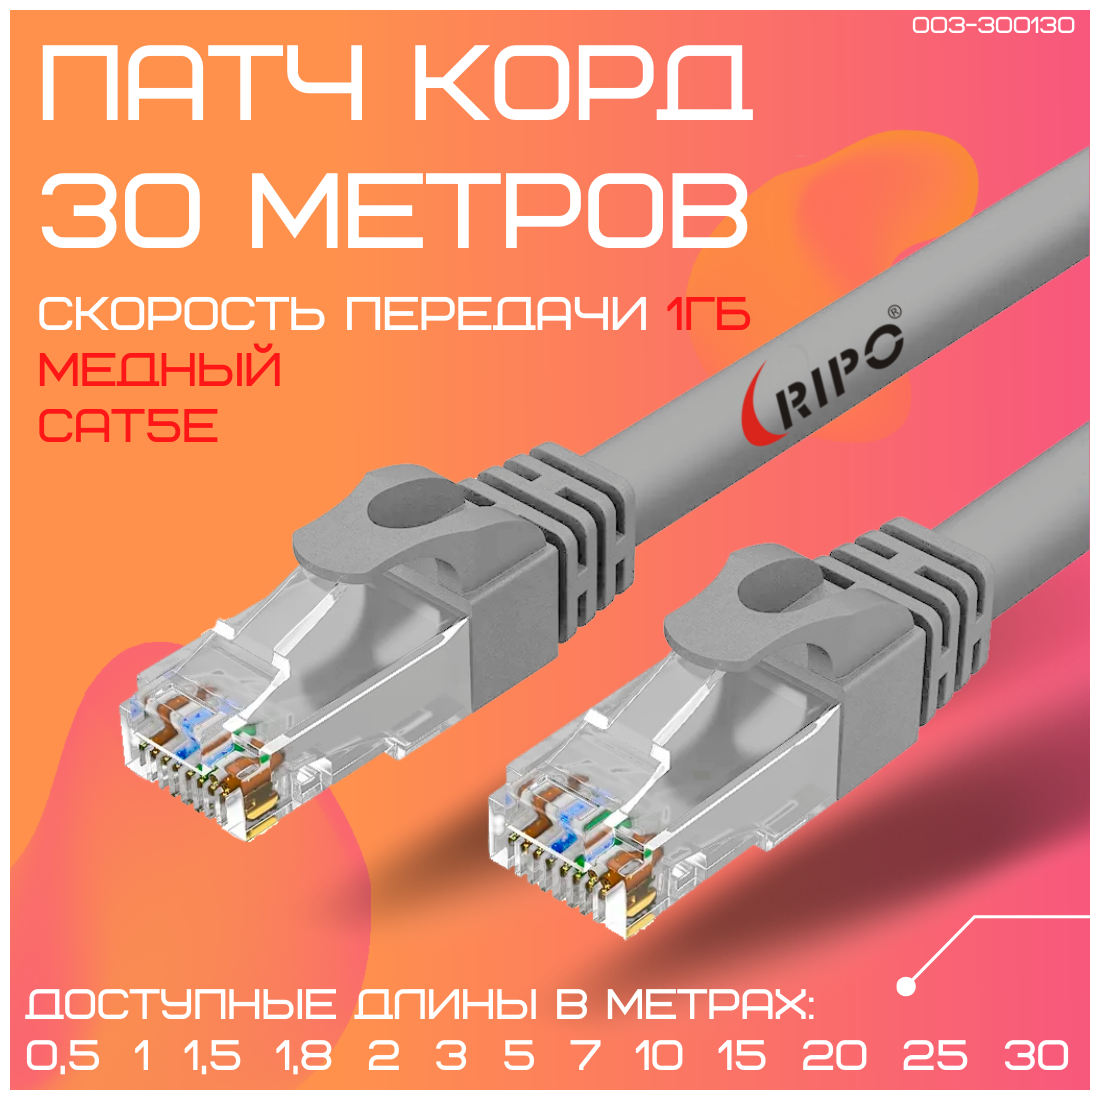 Витая пара лан кабель для интернета Патч-корд сетевой шнур провод для интернета UTP Кат.5е rj-45 RIPO литой медный 8 жил Cu 30 метров 003-300130